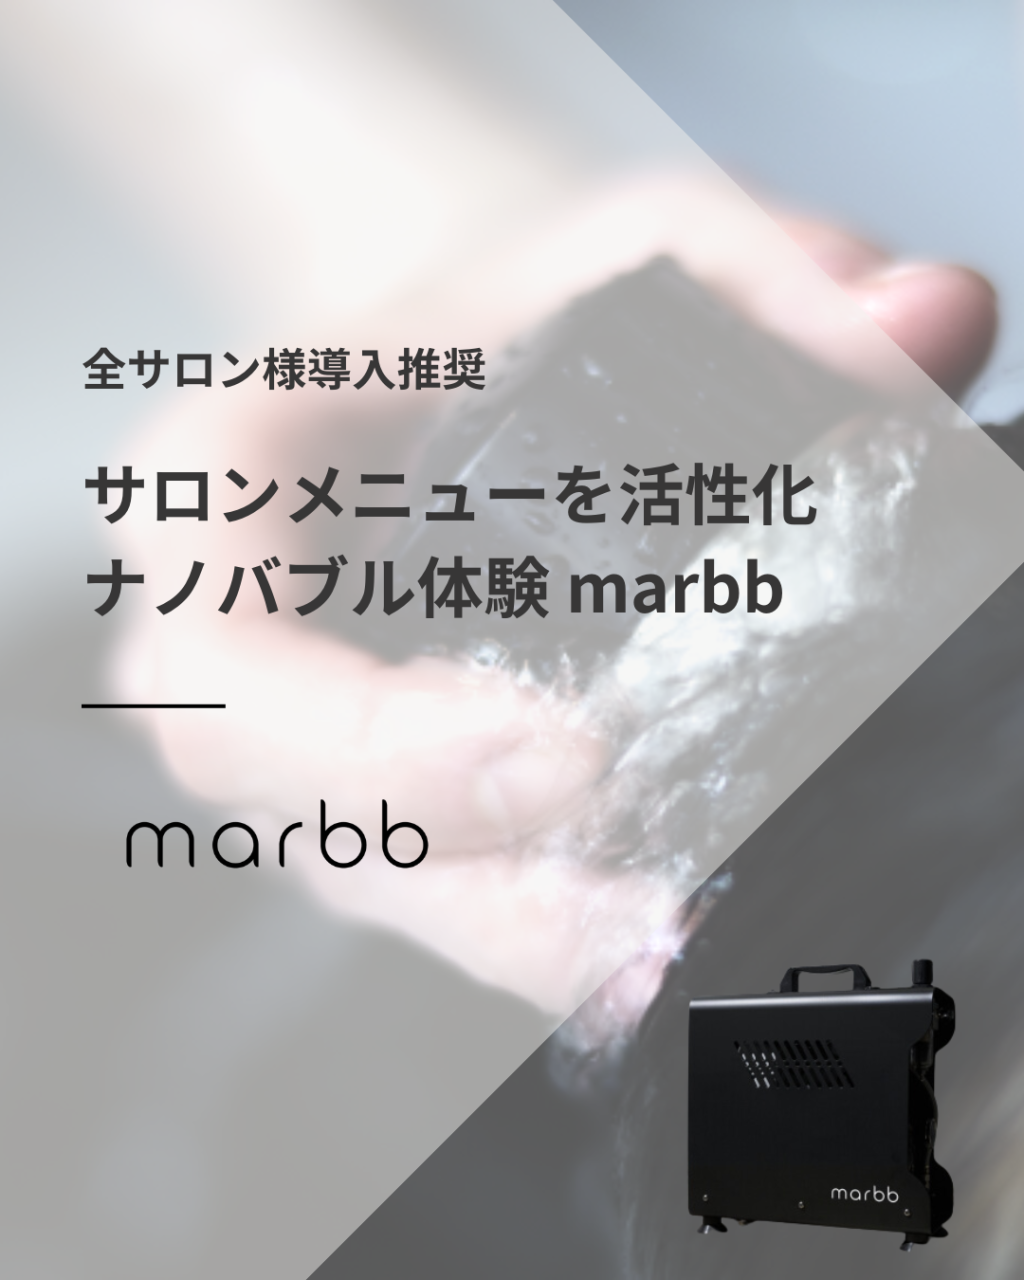 【marbb】全サロン様導入推奨！サロンメニューを活性化ナノバブル体験『marbb-マーブ-』